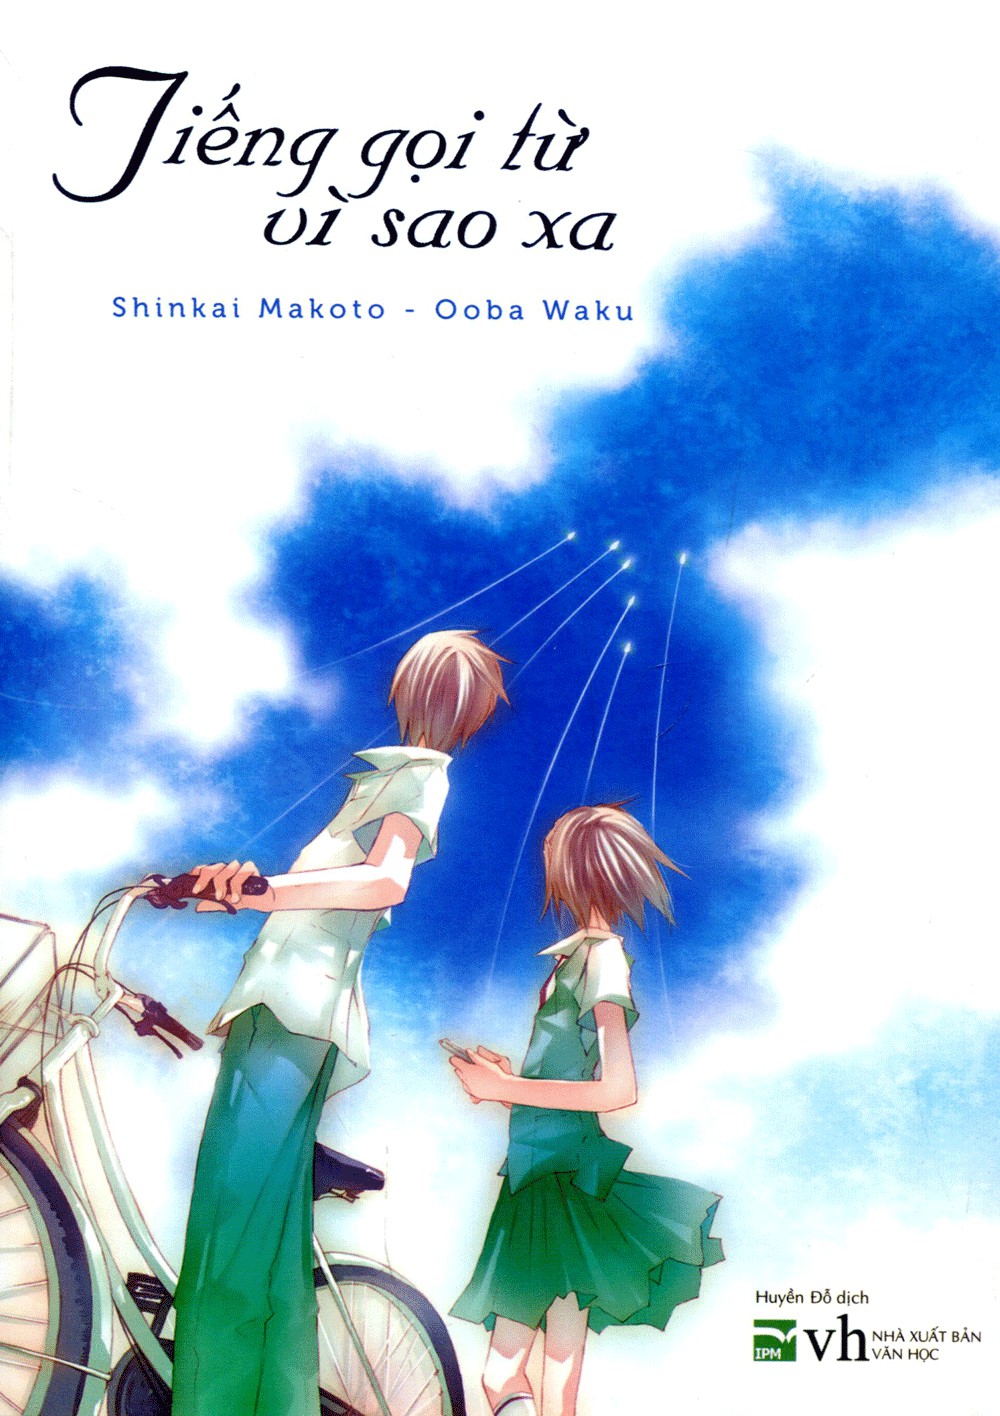 Tiếng Gọi Từ Vì Sao Xa - Shinkai Makoto & Ooba Waku